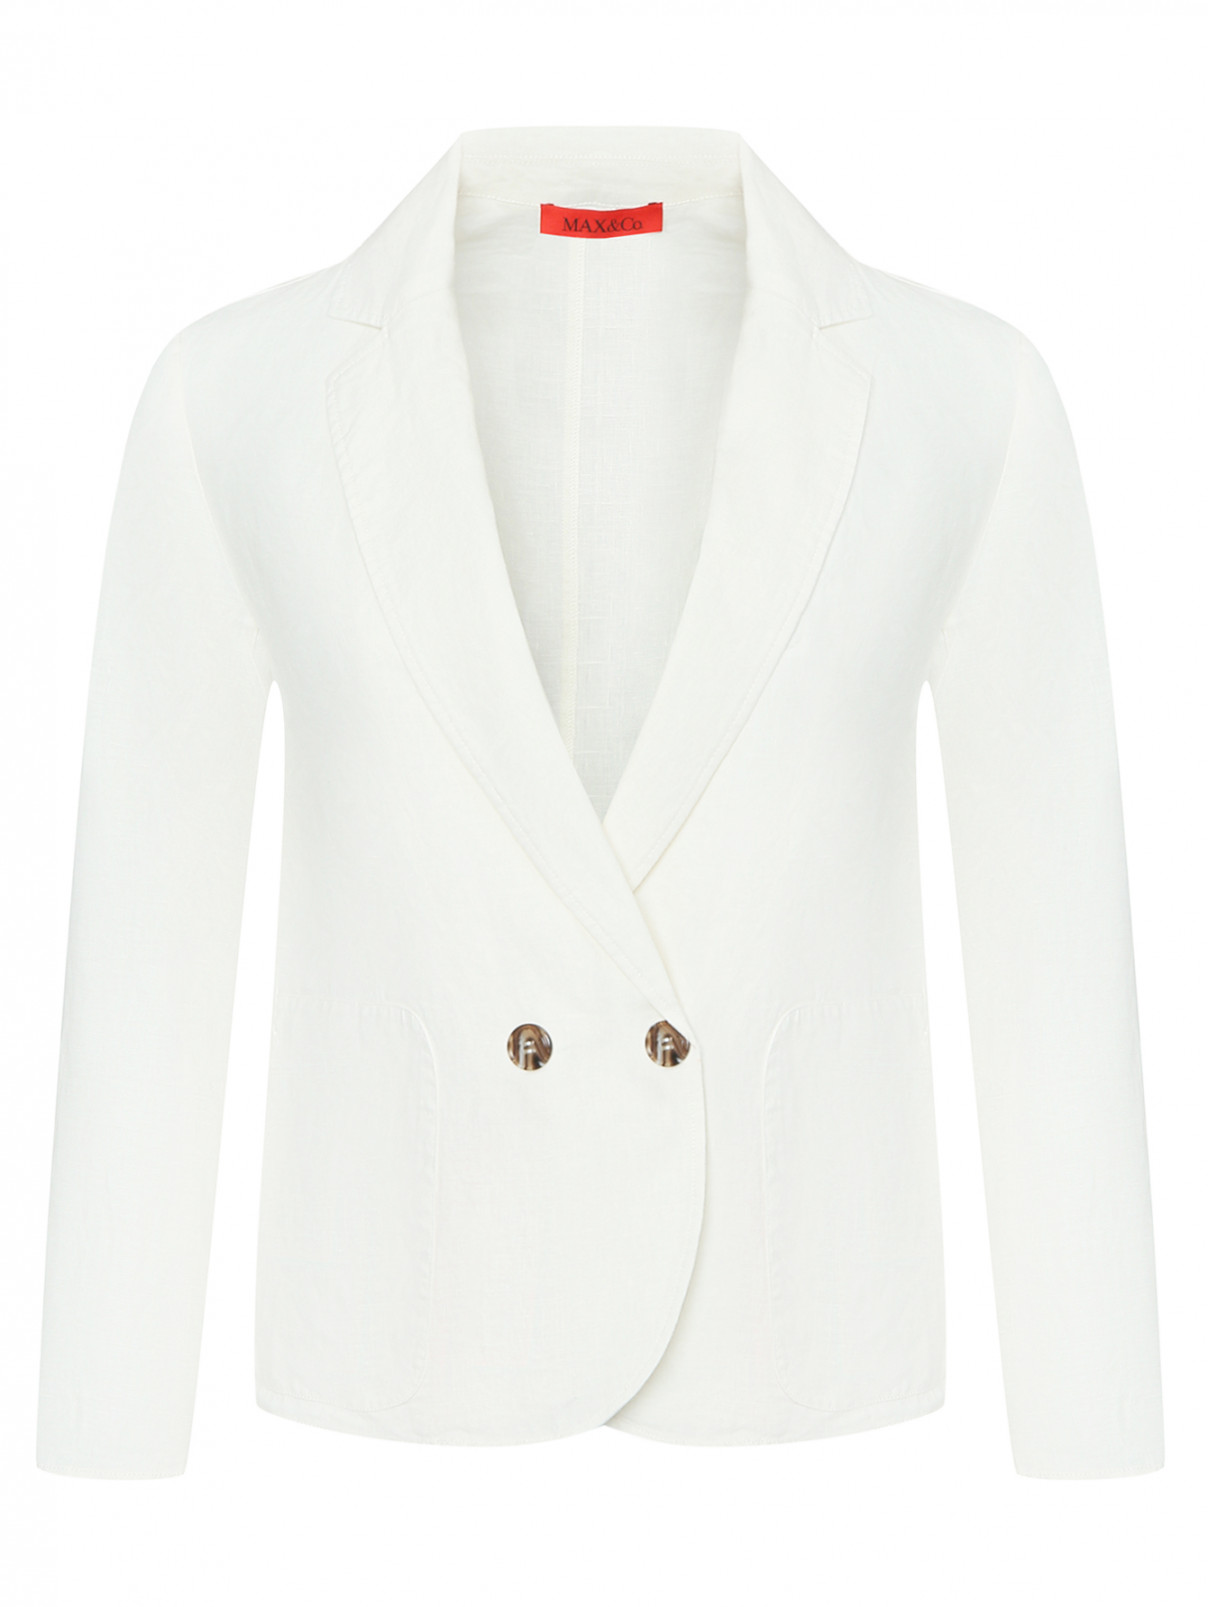 Жакет изо льна с карманами Max&Co  –  Общий вид  – Цвет:  Белый